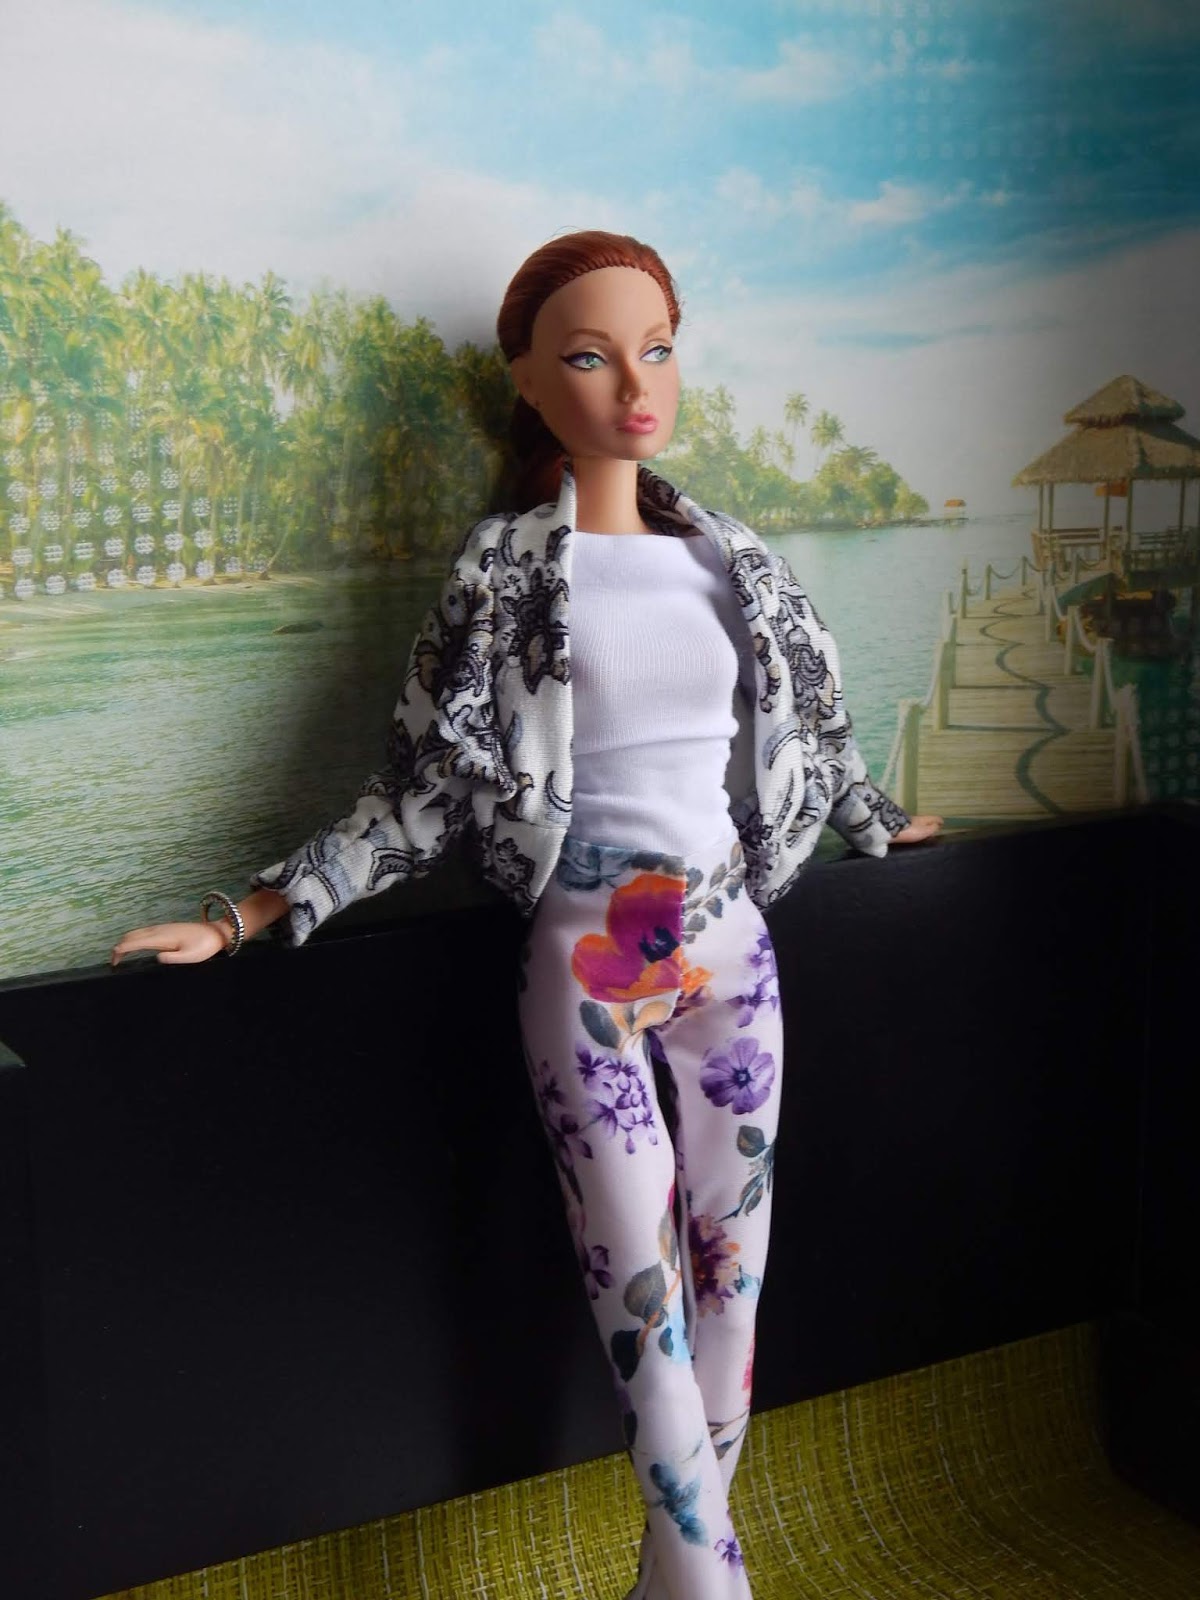 Eu Amo Artesanato: Roupa para Boneca Barbie com molde  Roupas de trabalho  elegantes, Estilo barbie, Roupas para bonecas barbie